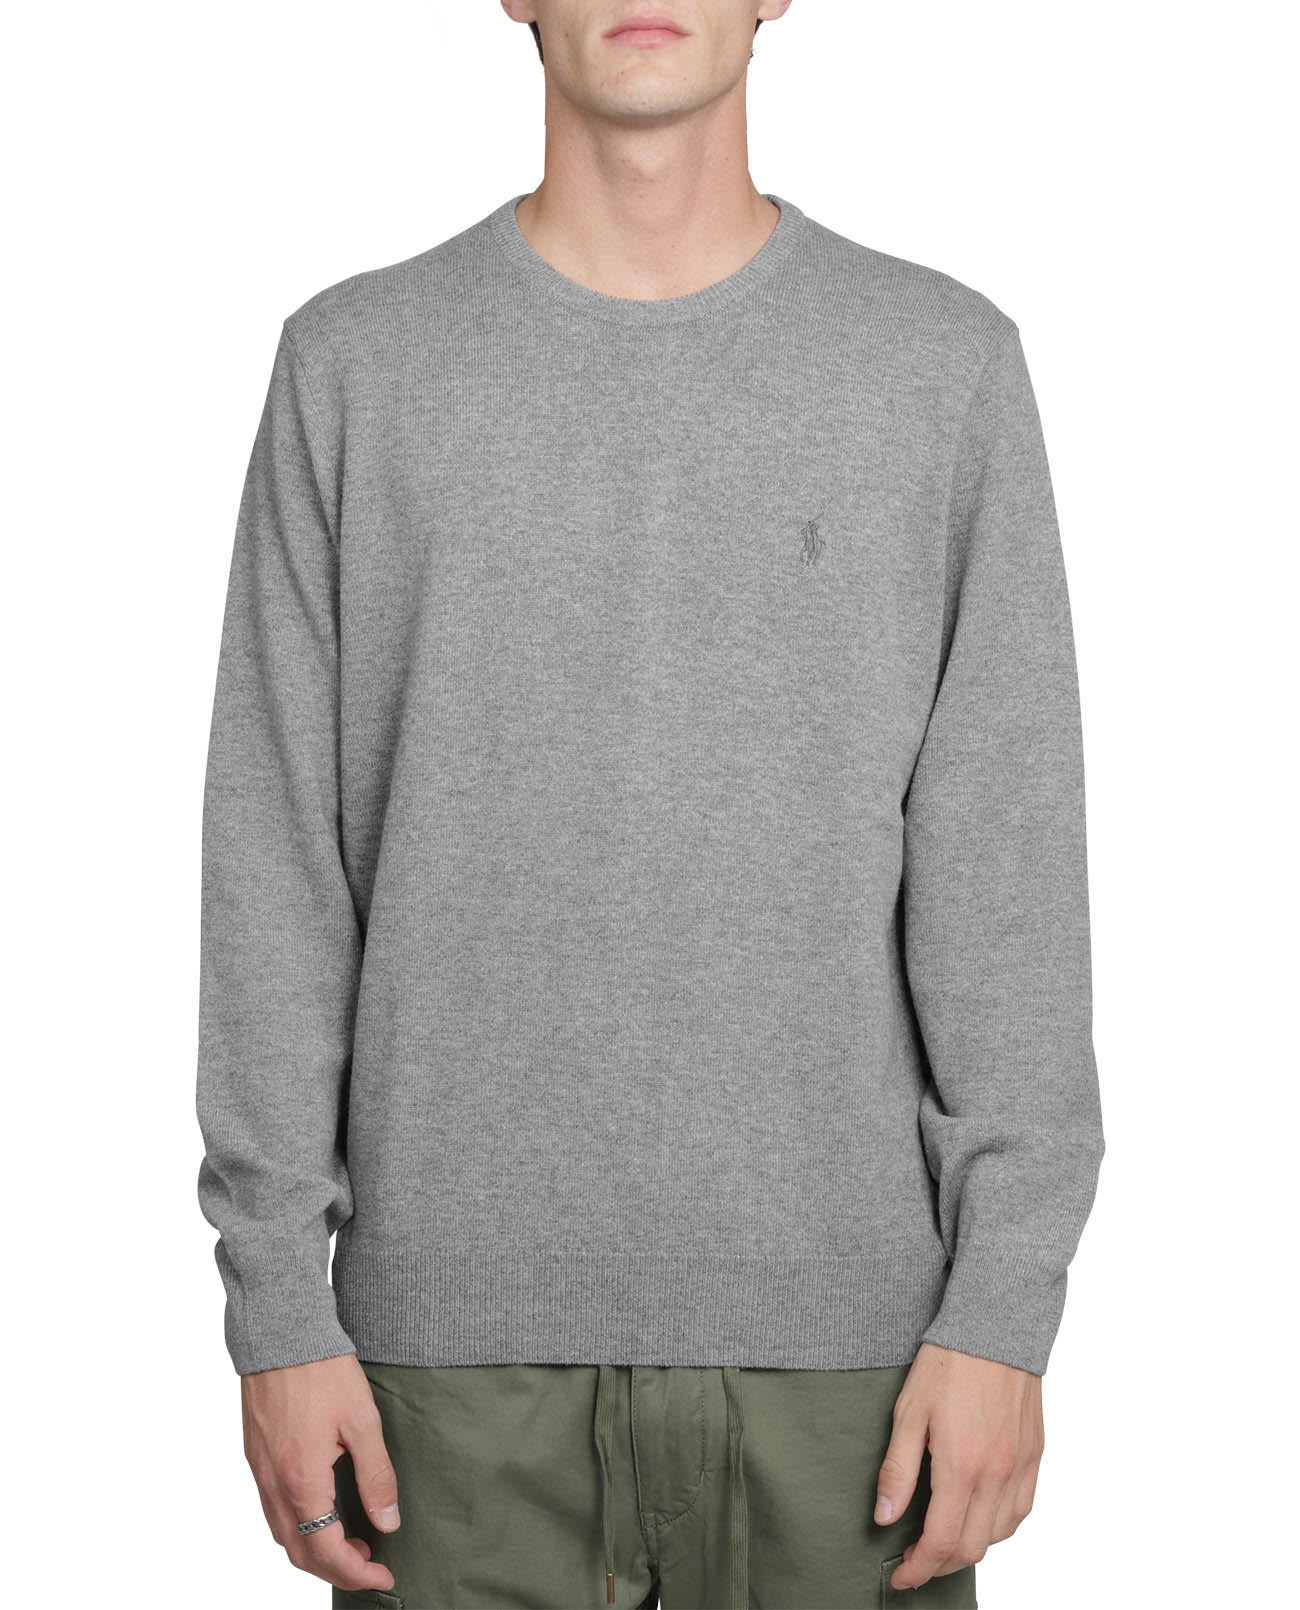 Ralph Lauren Grey Crewneck Sweater